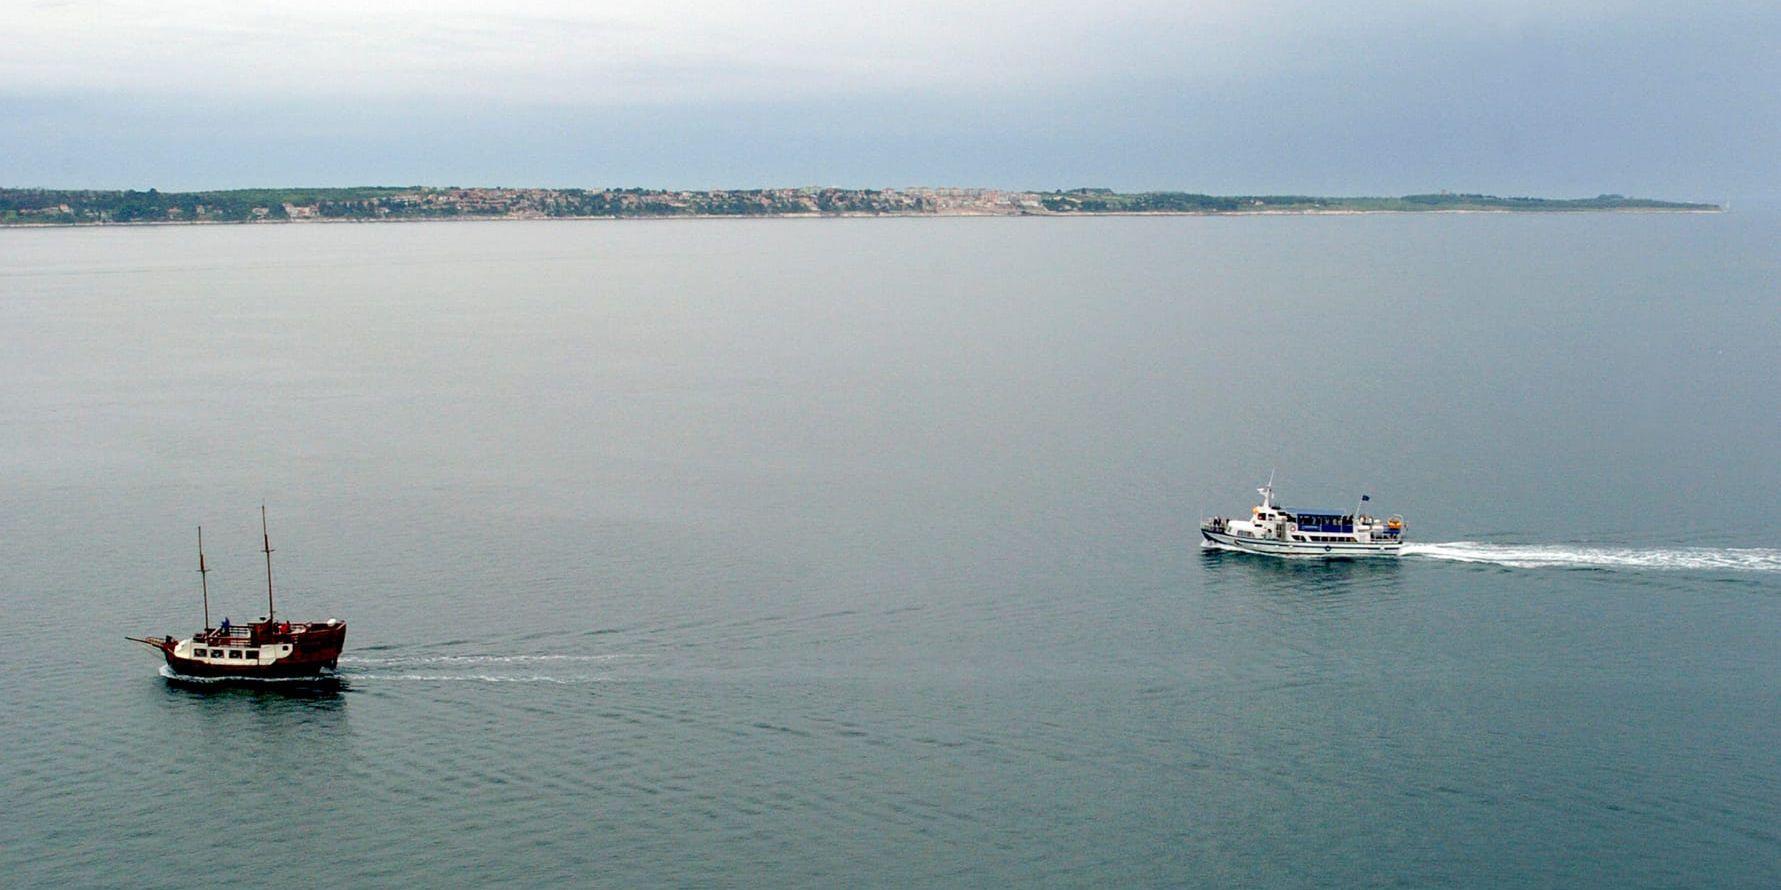 Piranbukten ligger precis i skarven vid Slovenien och Kroatien. Arkivbild från 2005.